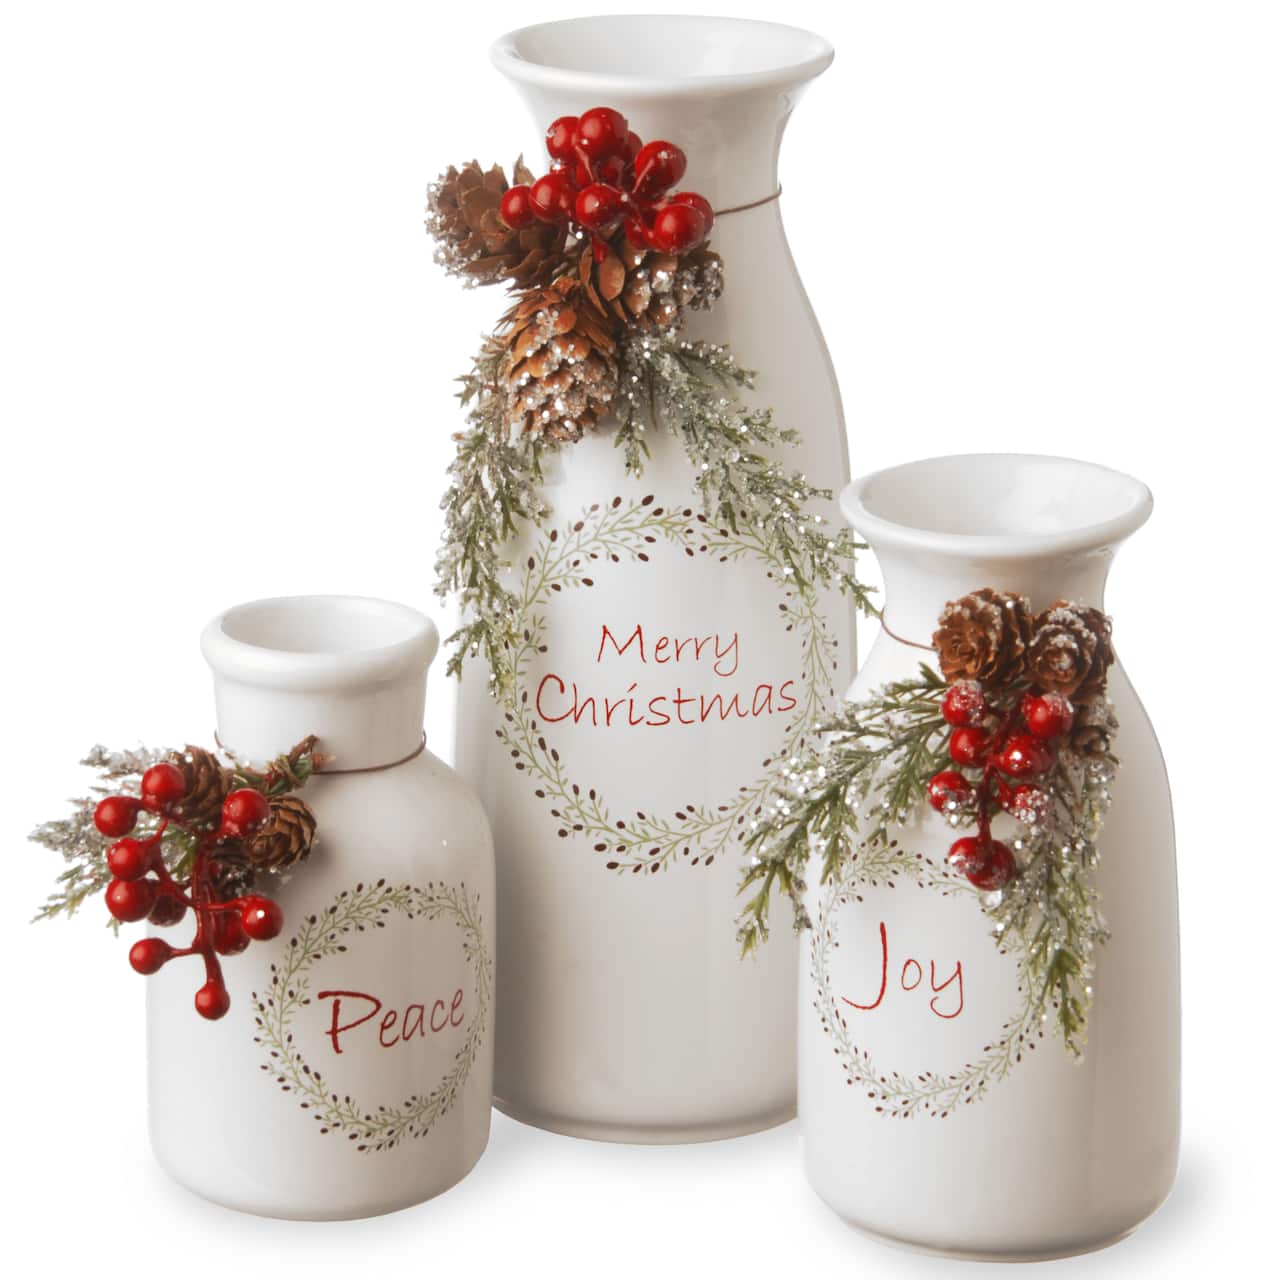 Antique Holiday Ceramic Milk Bottles Set, 3 Pack